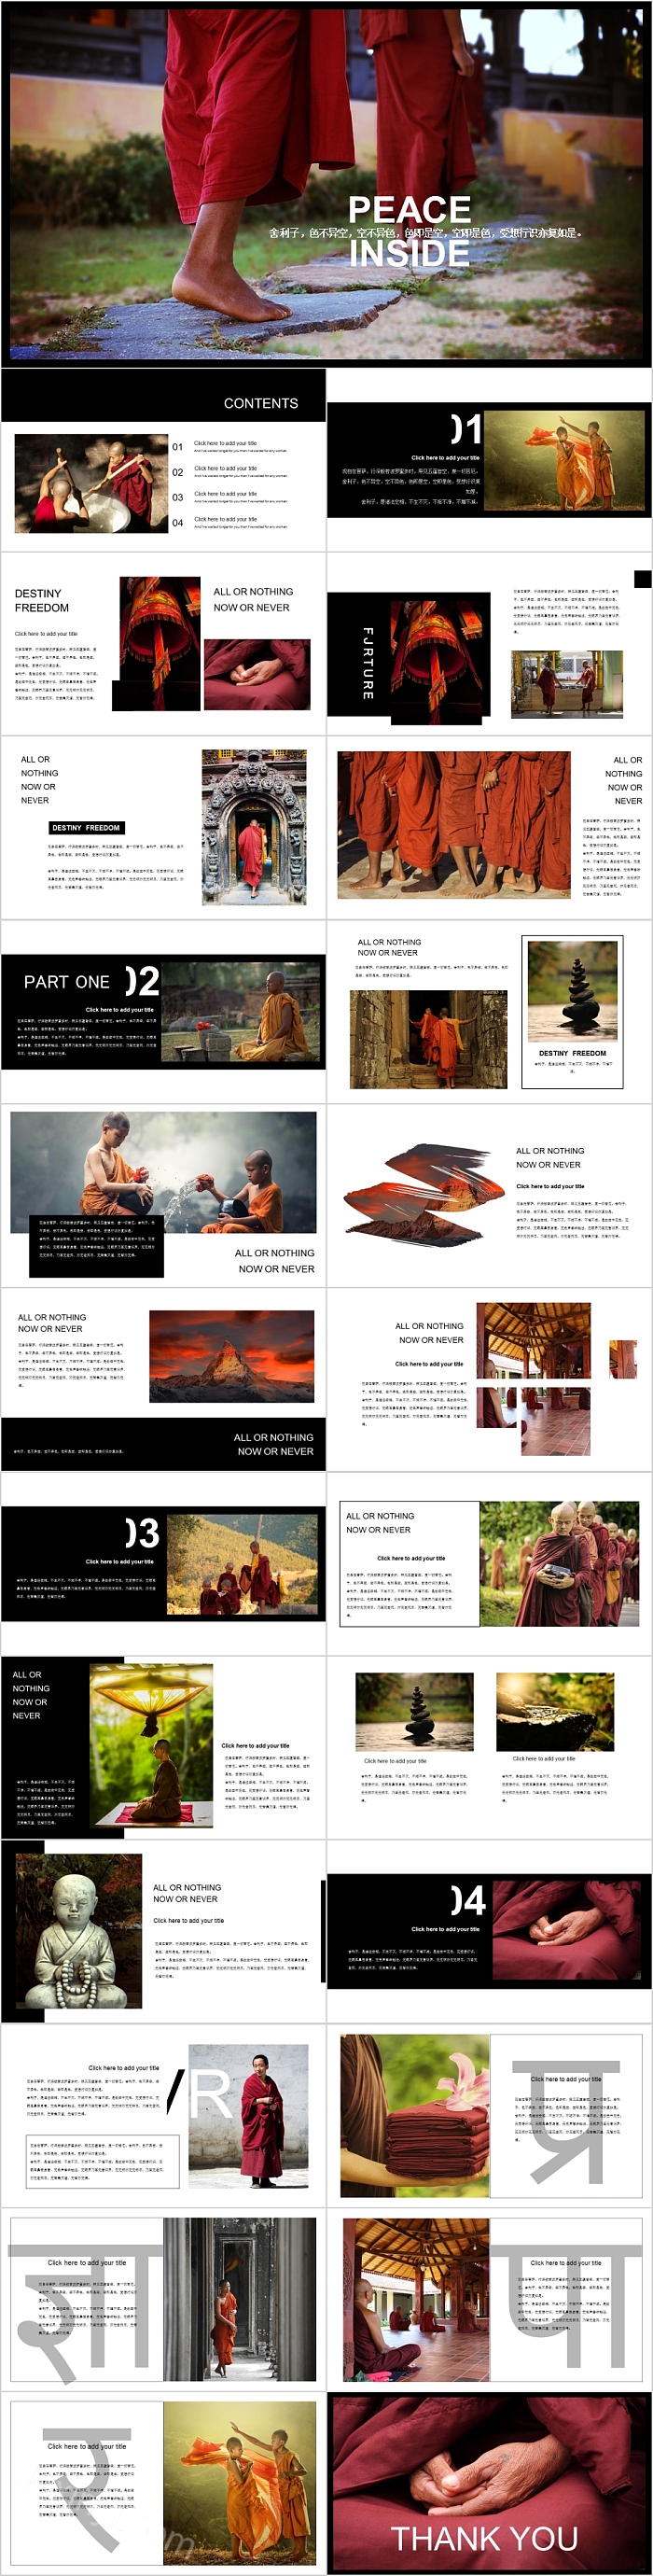 泰国佛教文化宣传画册